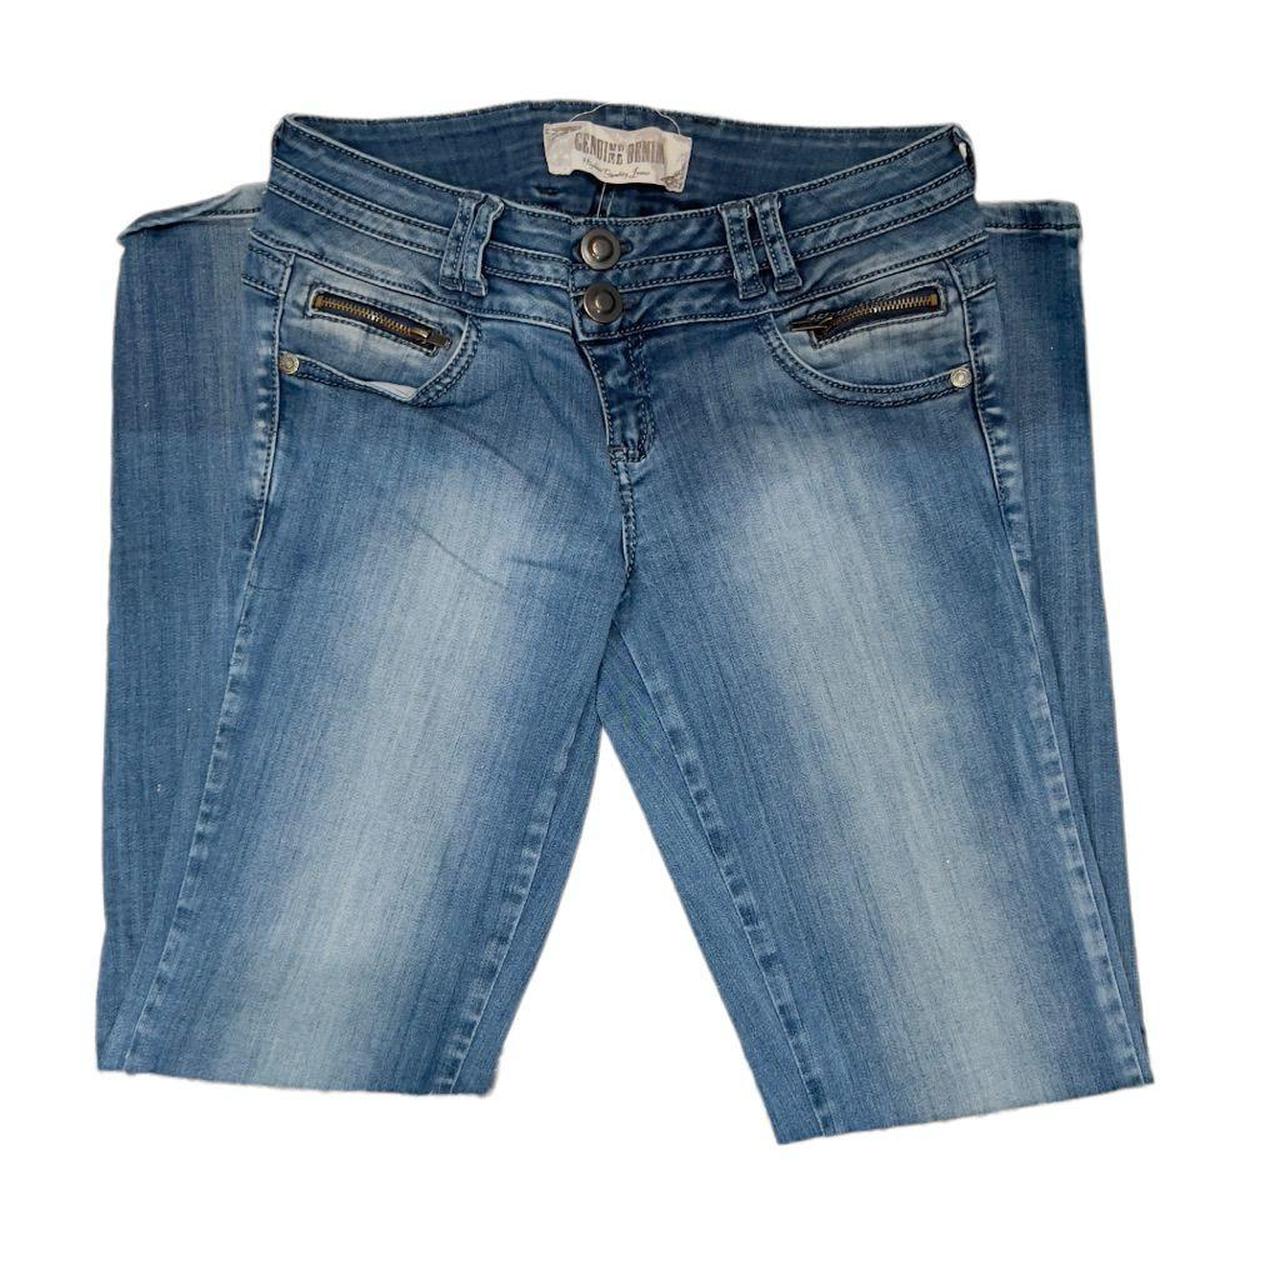 Lot Bundle of 4x Jeans 1x Shorts Size 31 (Size 12) - Depop